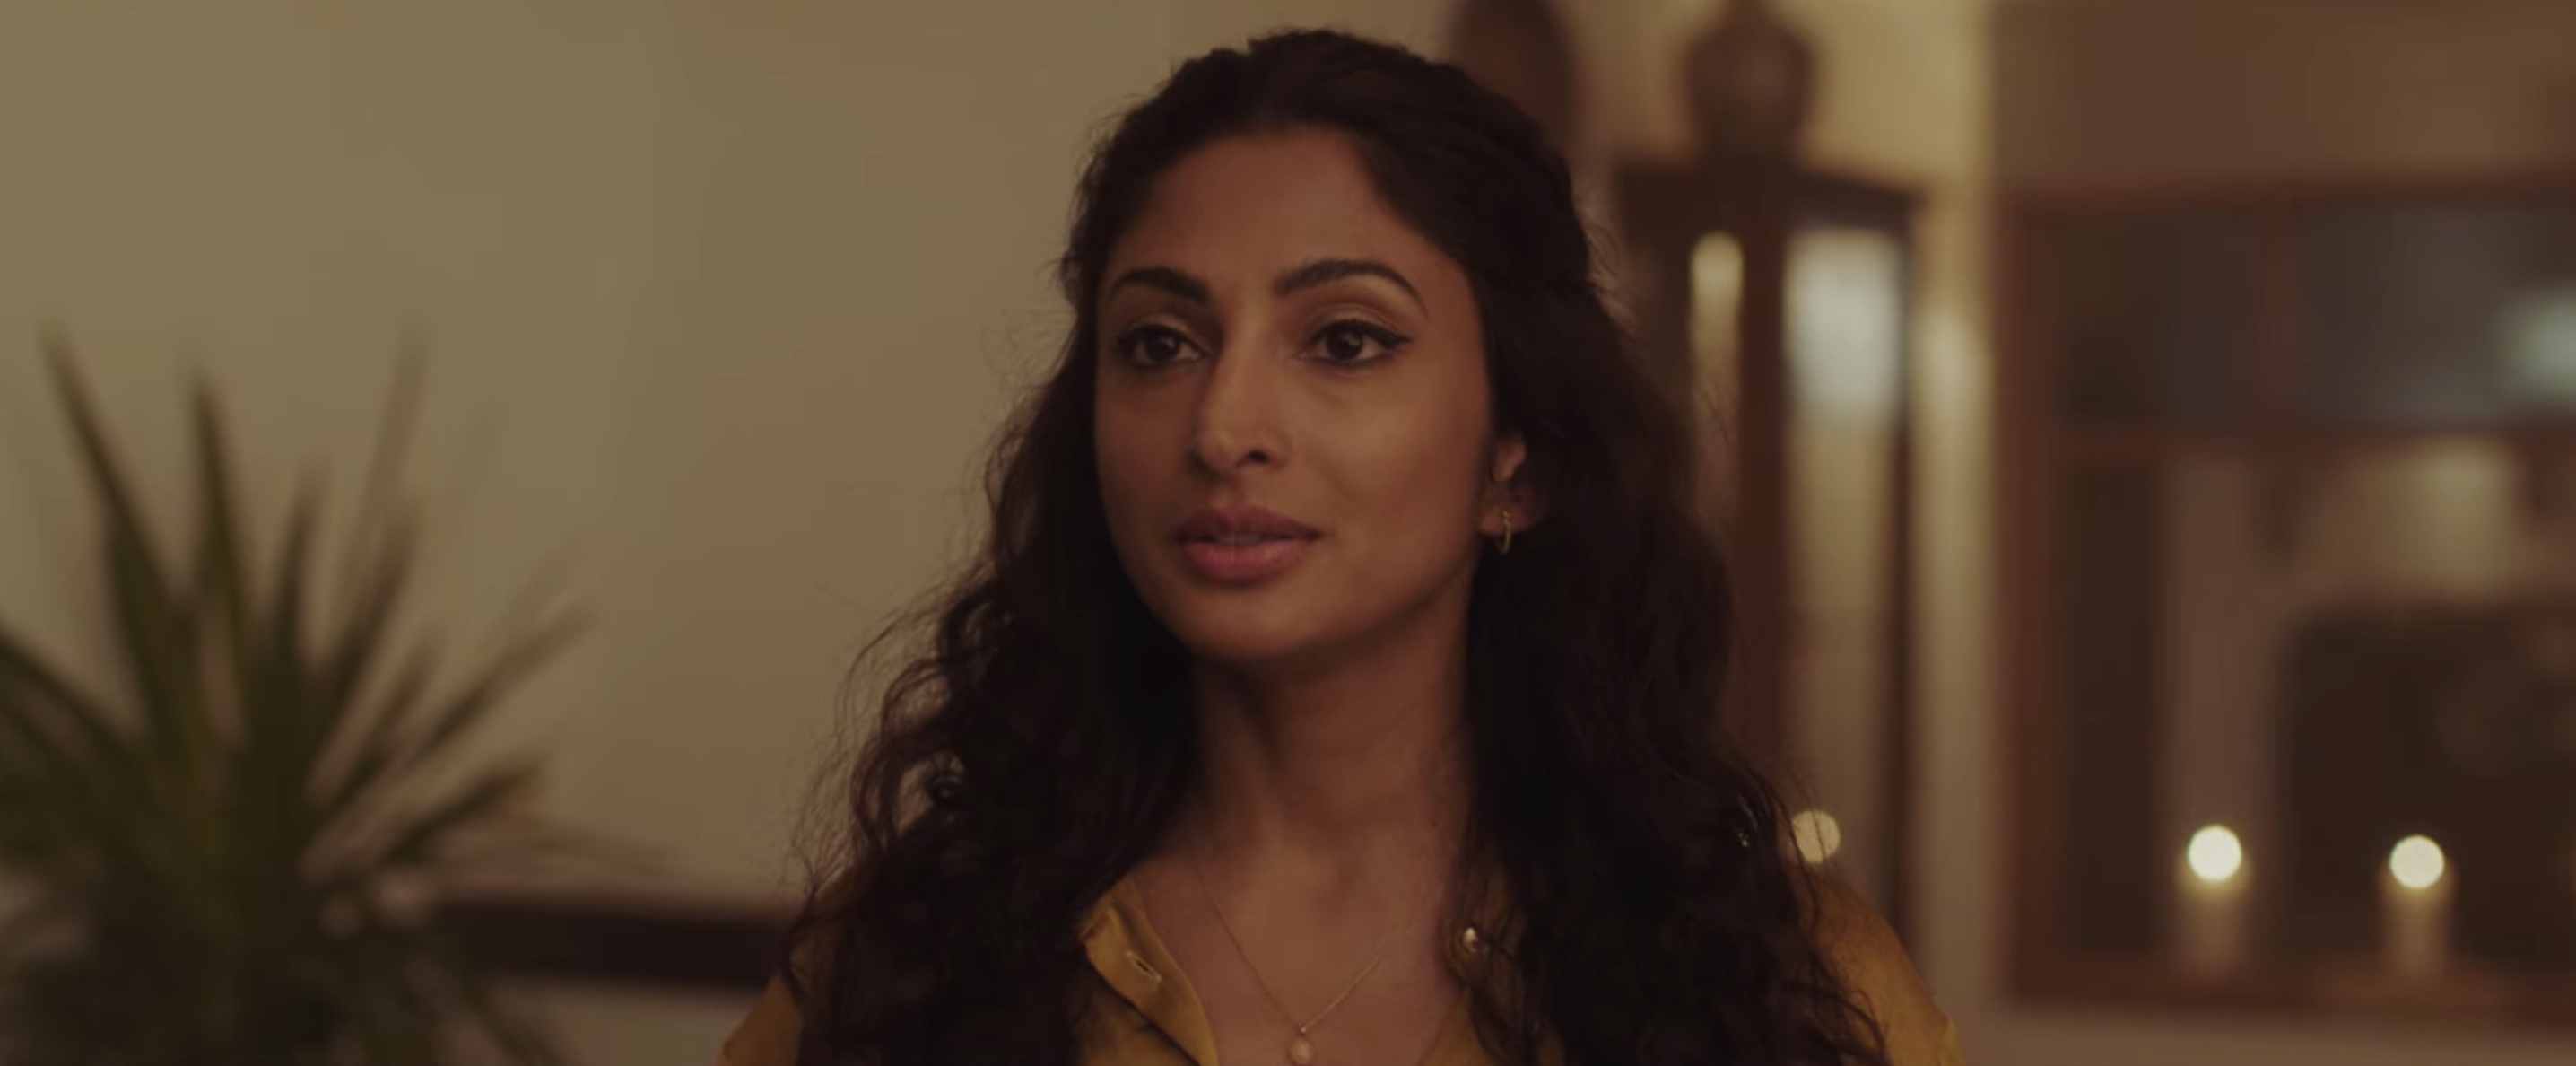 Stromboli Cast on Netflix - Neerja Naik as Thandi